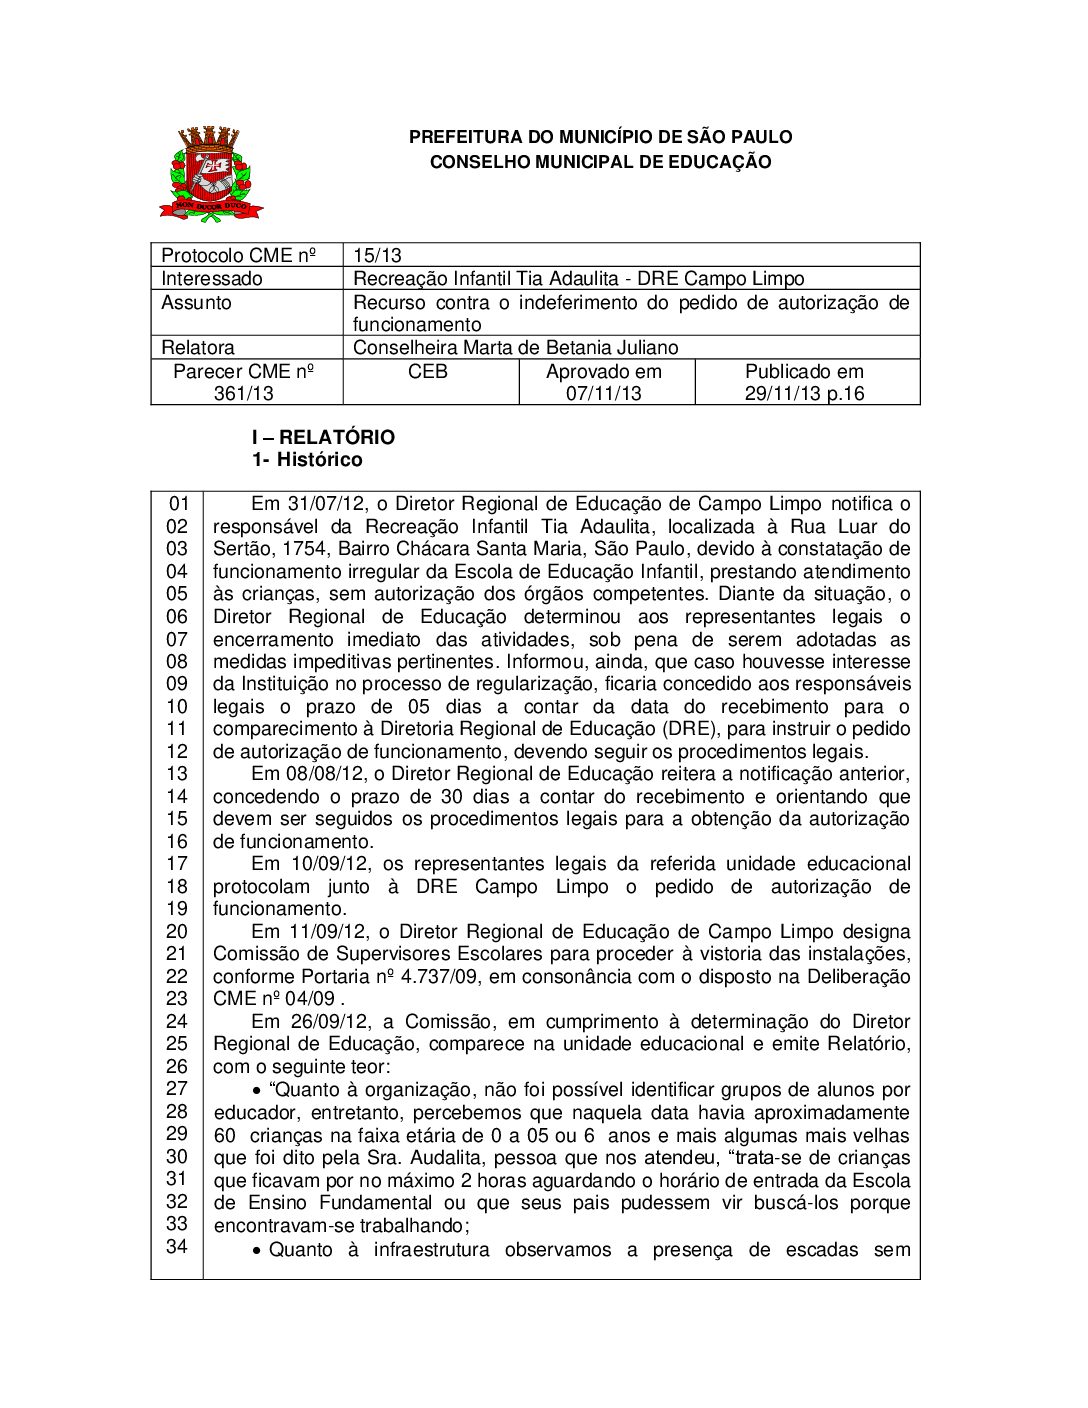 Parecer CME nº 361/2013 - Recreação Infantil Tia Adaulita (DRE Campo Limpo) - Recurso contra o indeferimento do pedido de autorização de funcionamento 